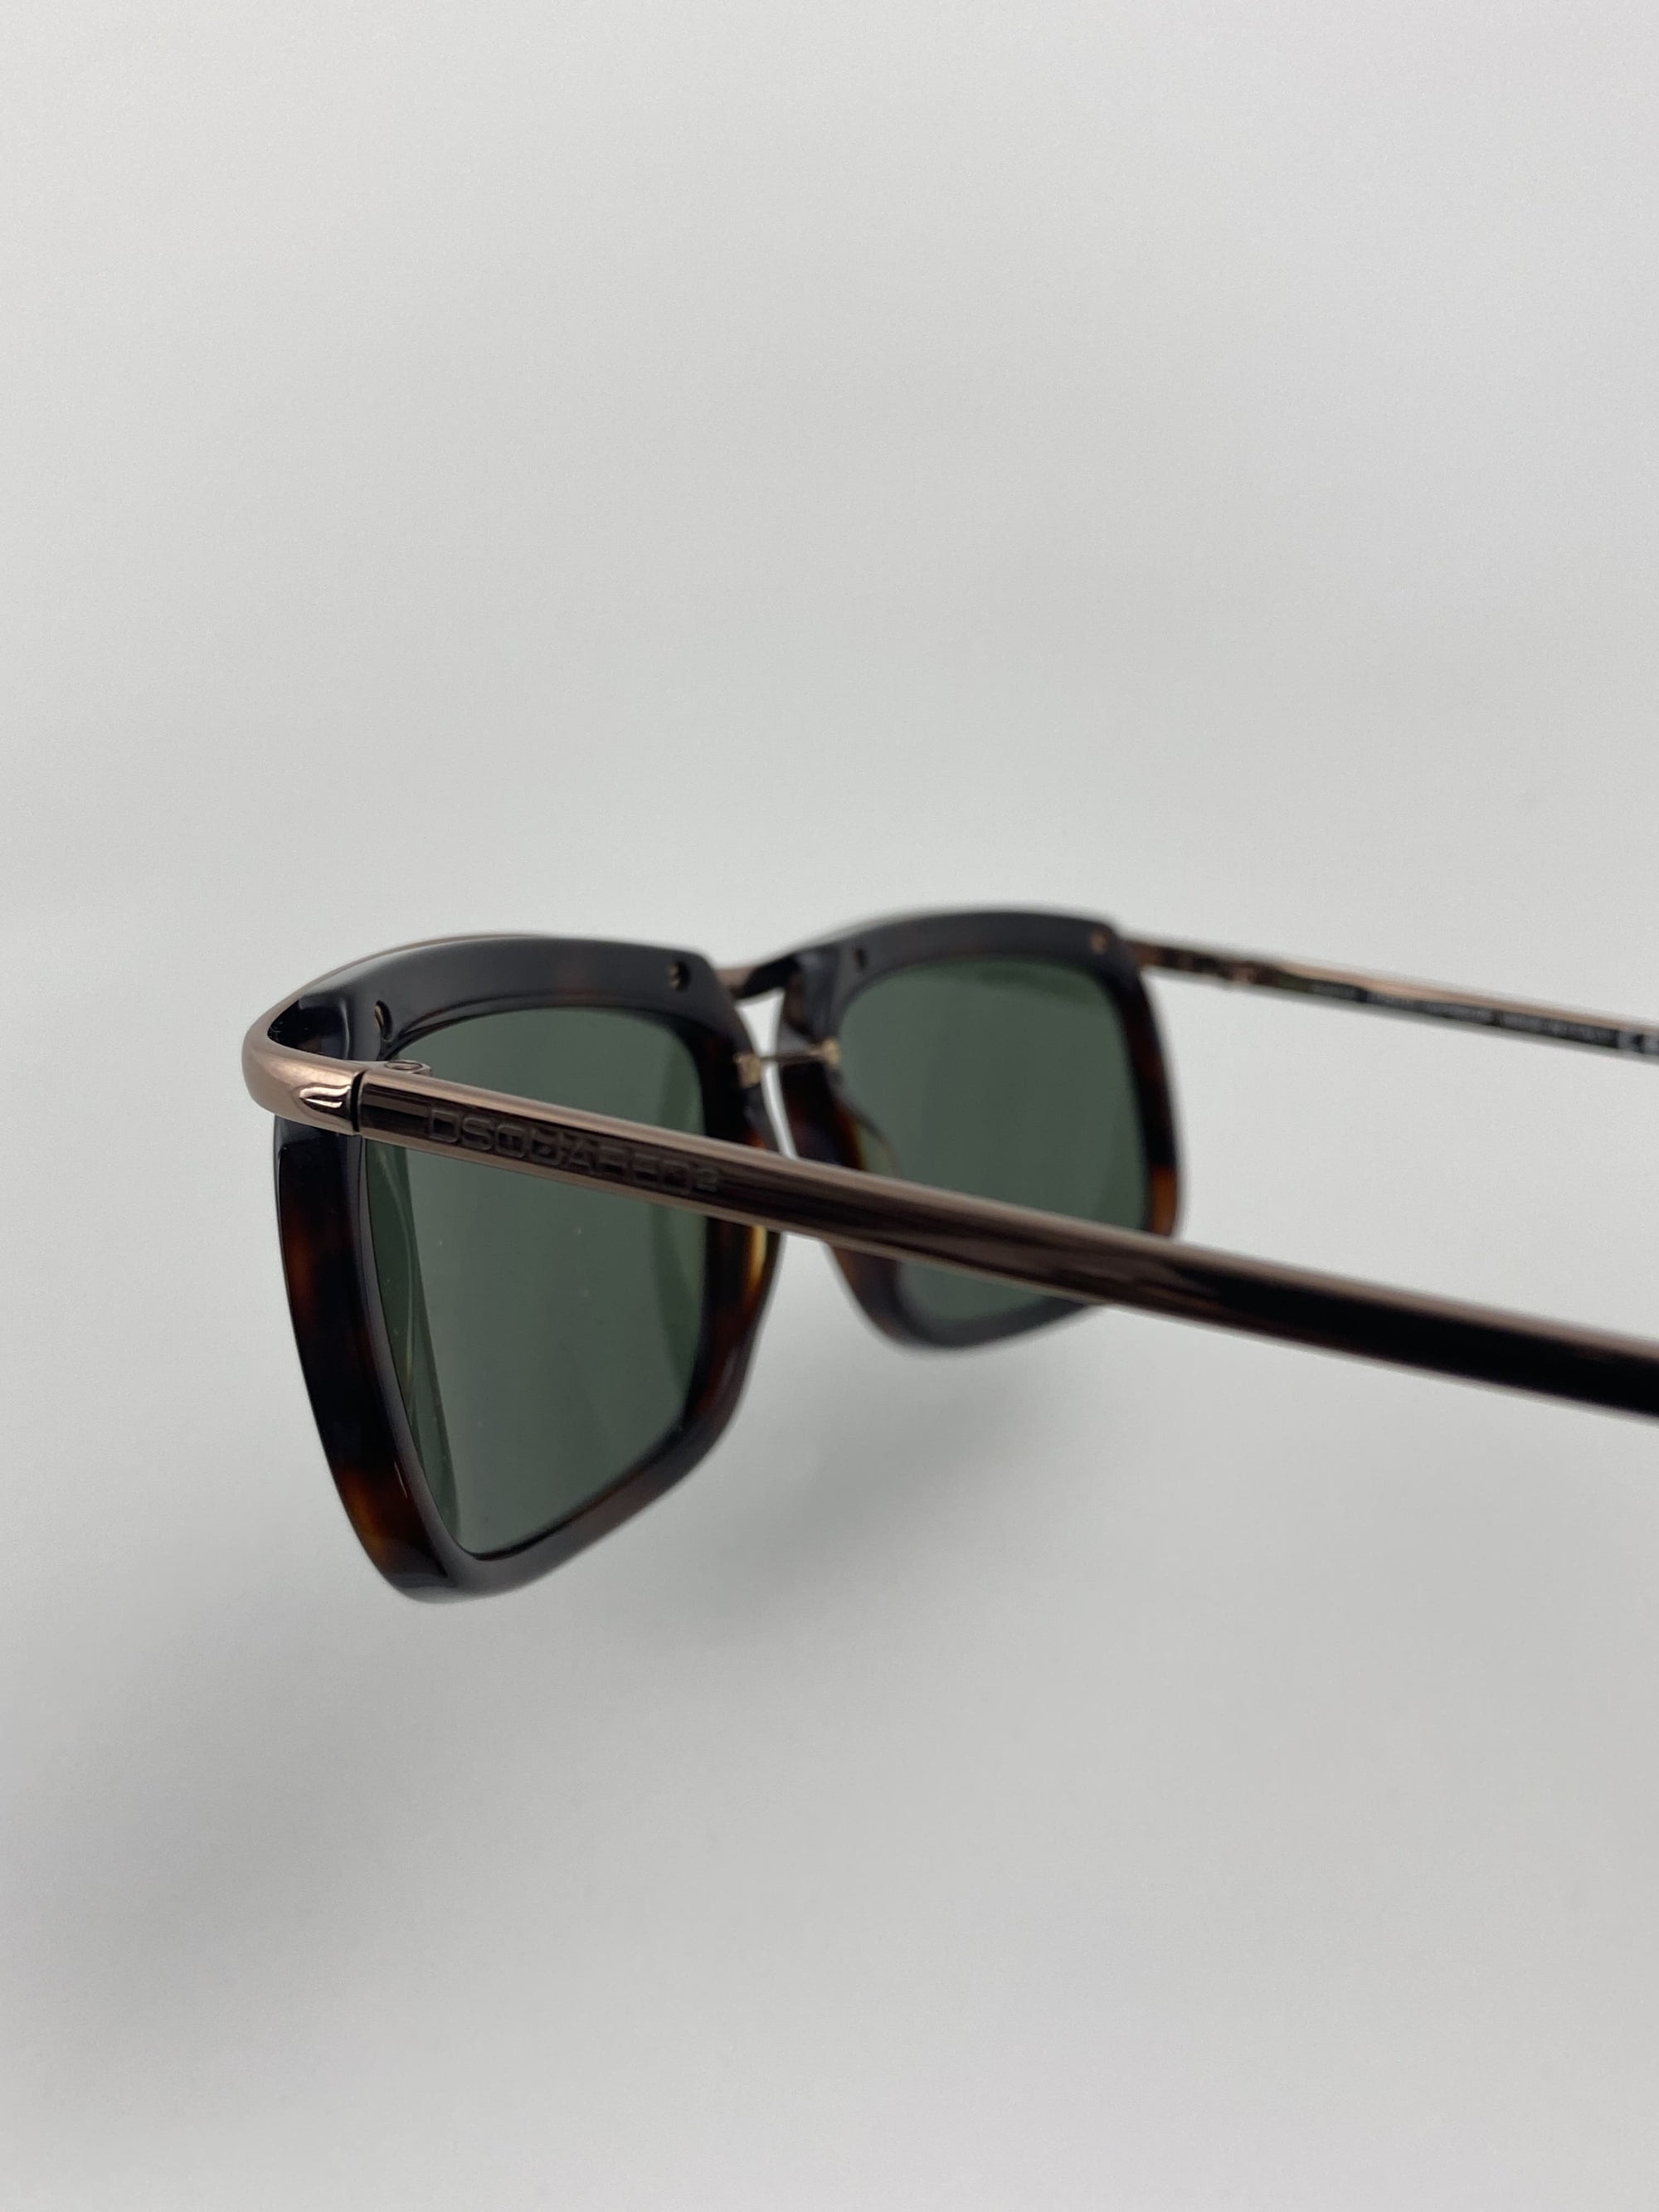 Produktbild einer Dsquared Sunglasses brown vom Bügel von der Seite vor weißem Hintergrund.